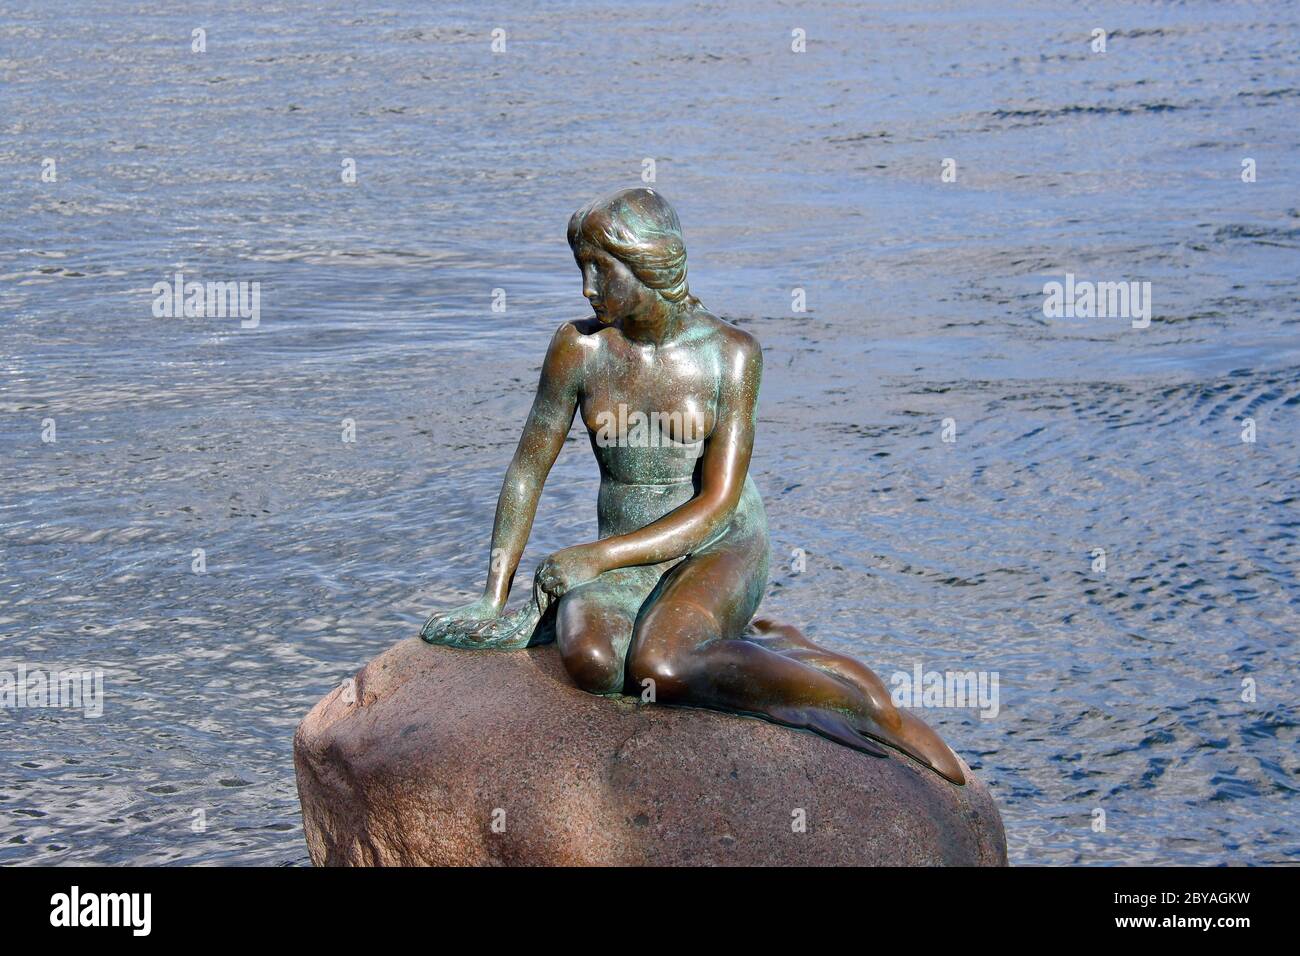 La petite statue de la Sirène, Den lille Havfrue, Copenhague, København, Danemark, Europe, kis habeány szobra Banque D'Images